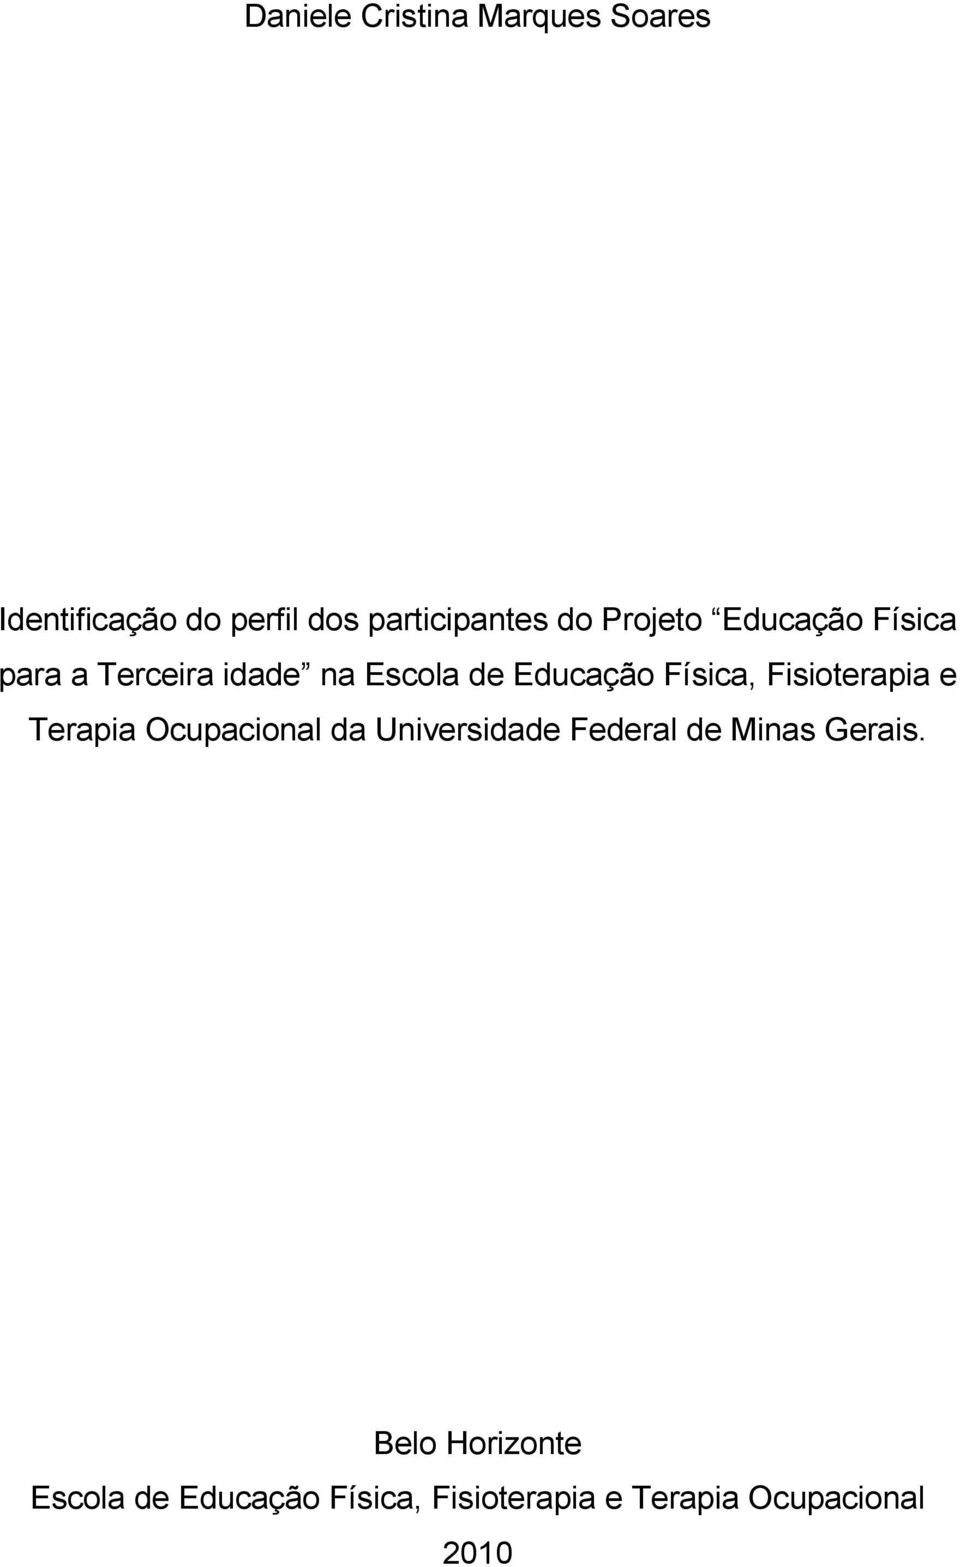 Fisioterapia e Terapia Ocupacional da Universidade Federal de Minas Gerais.